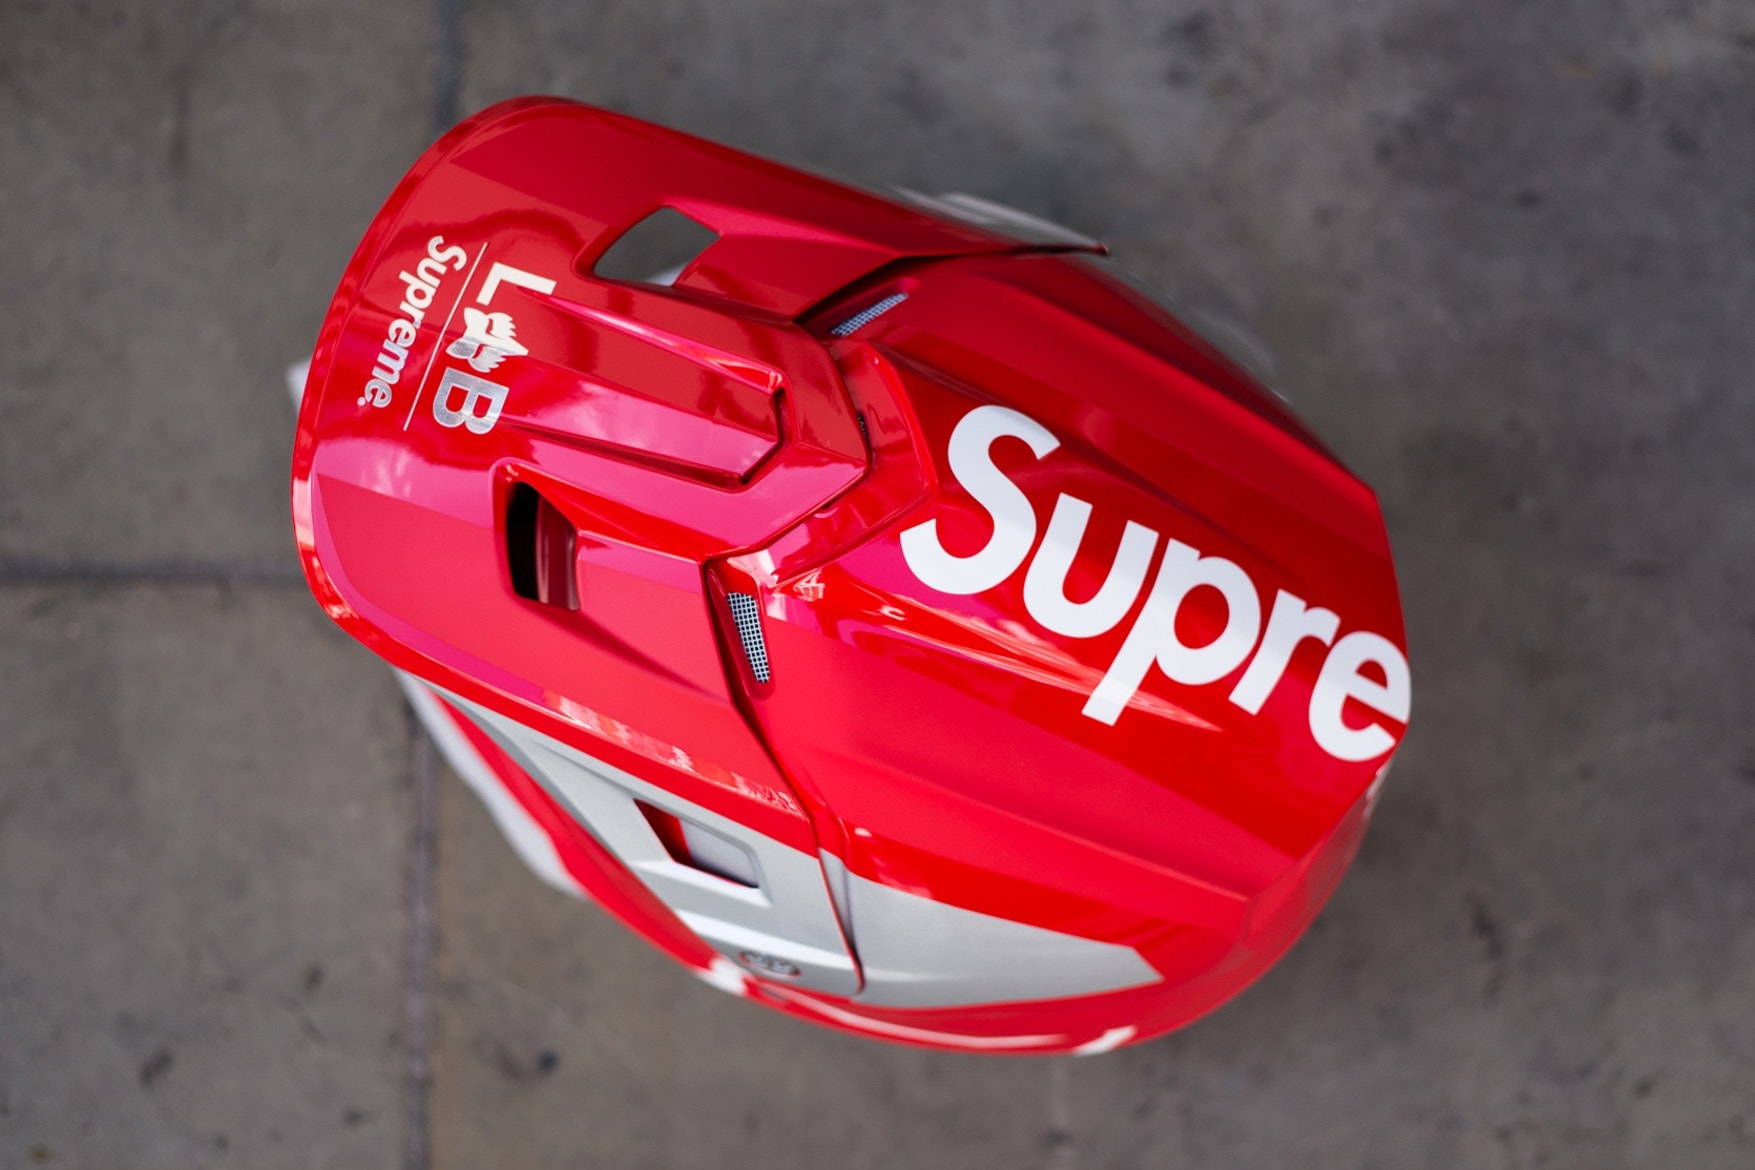 Collection Supreme & Fox Racing 2018